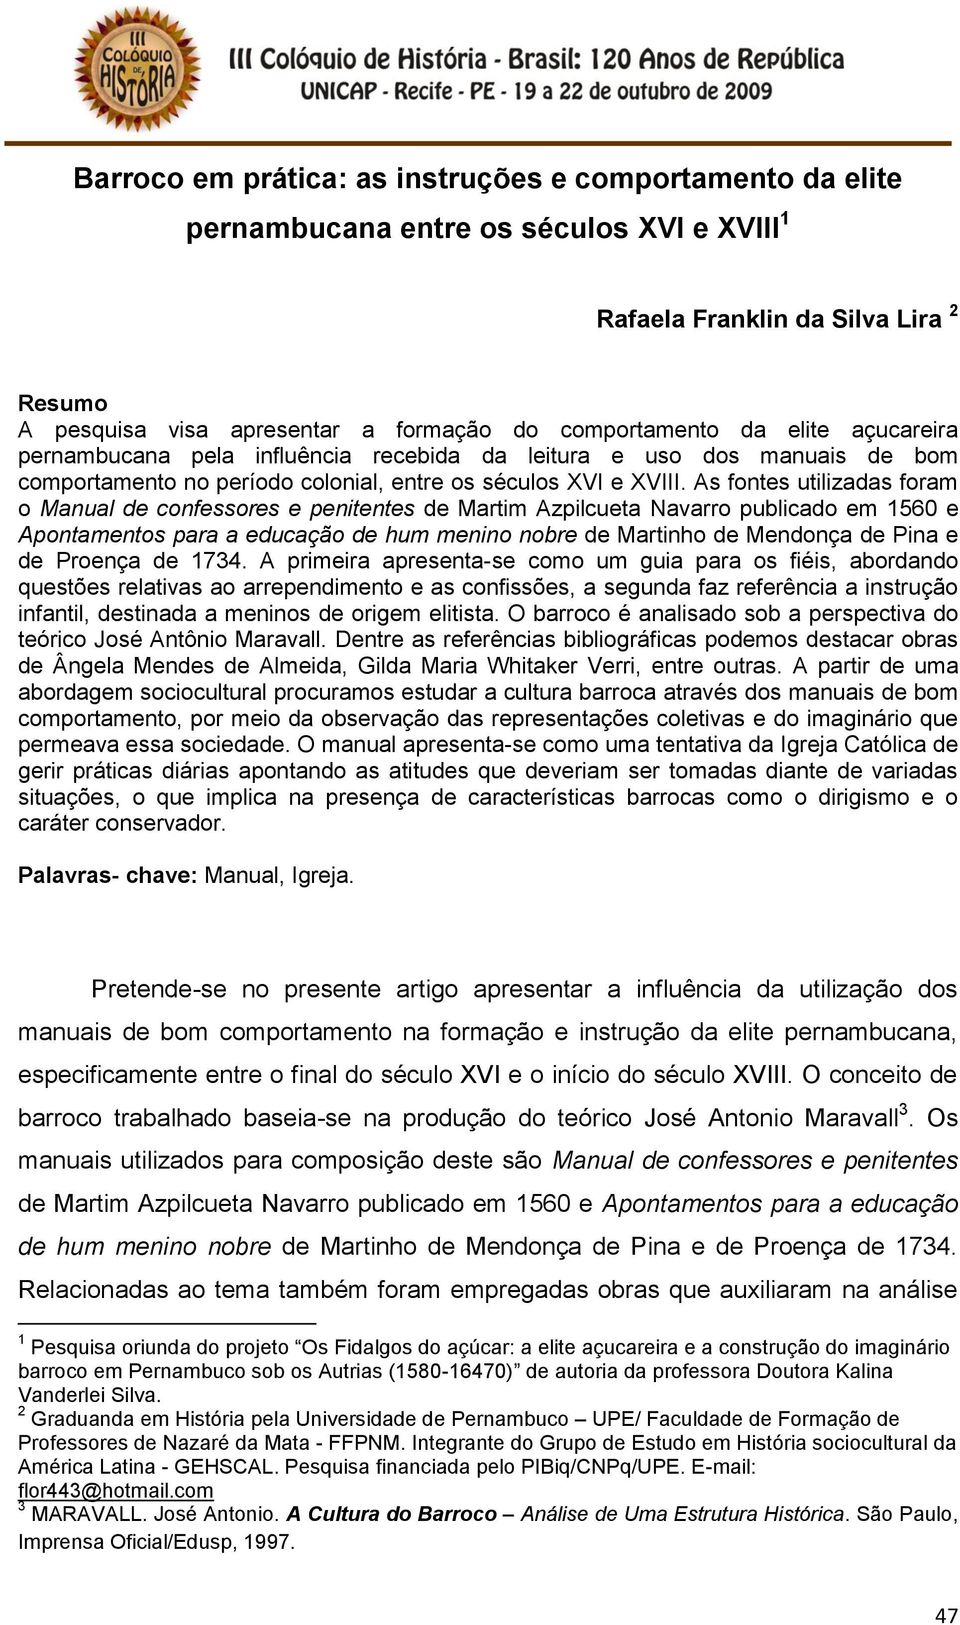 As fontes utilizadas foram o Manual de confessores e penitentes de Martim Azpilcueta Navarro publicado em 1560 e Apontamentos para a educação de hum menino nobre de Martinho de Mendonça de Pina e de